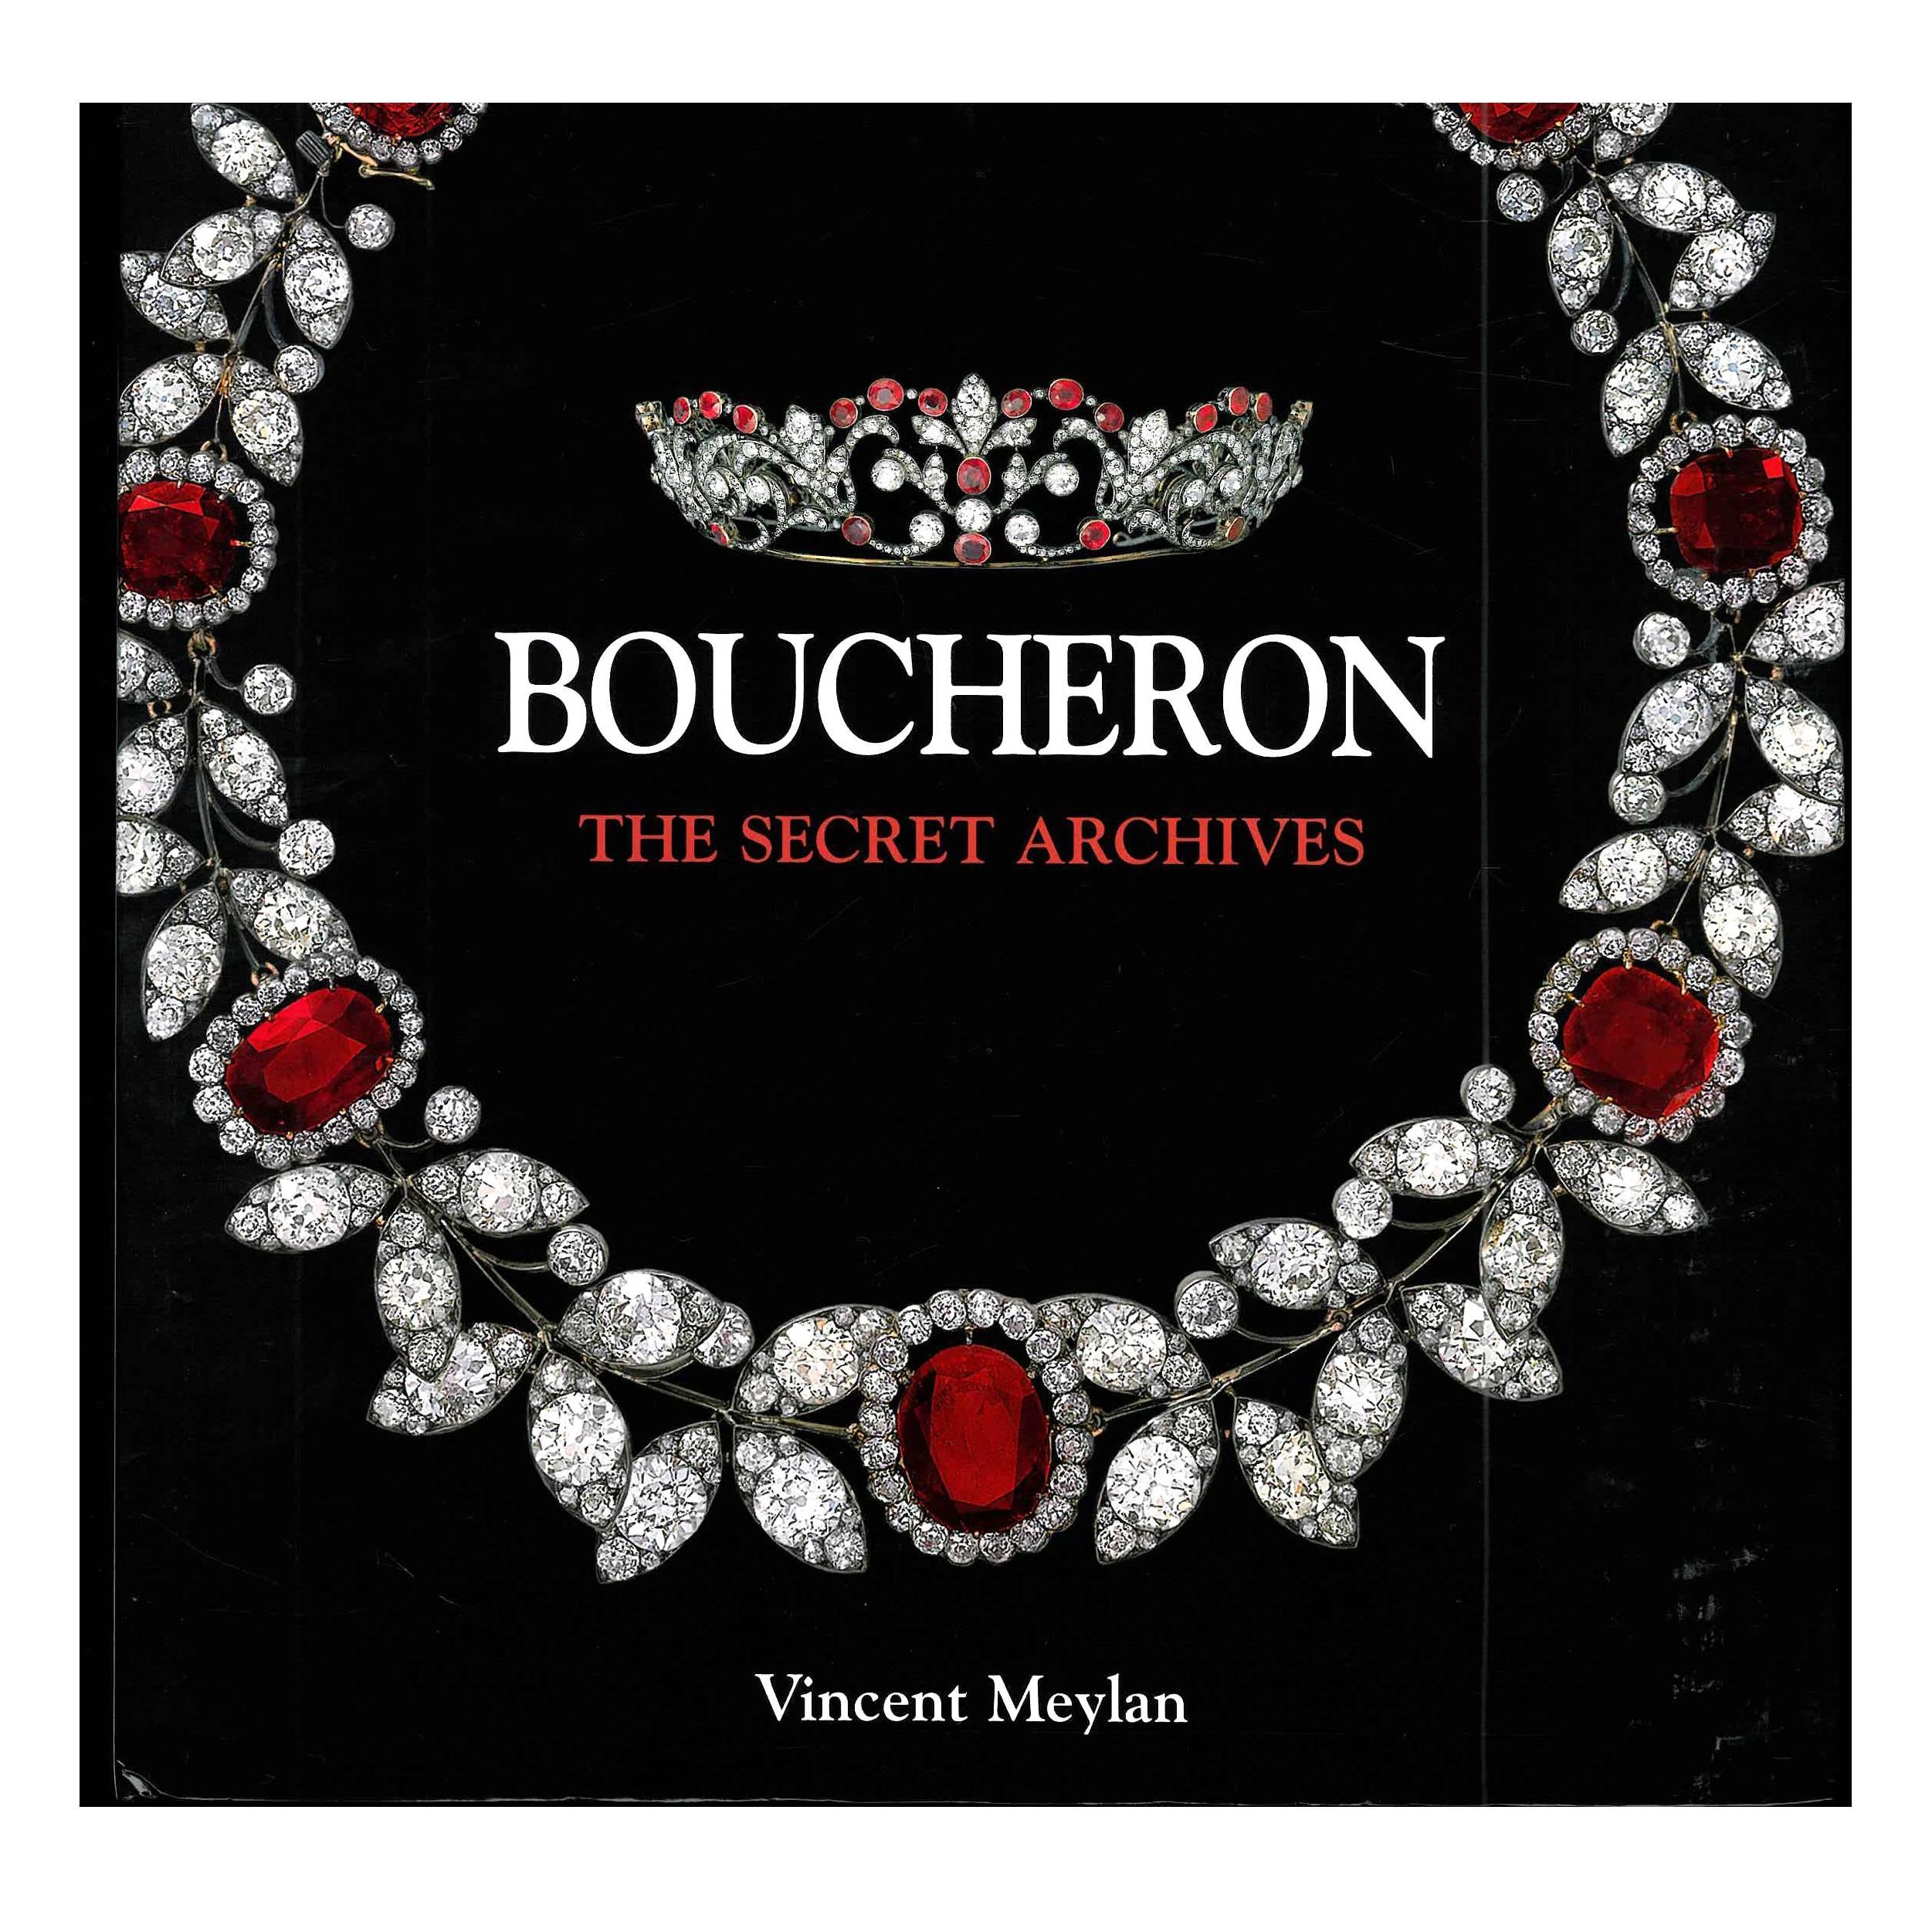 Book of Boucheron The Secret Archives